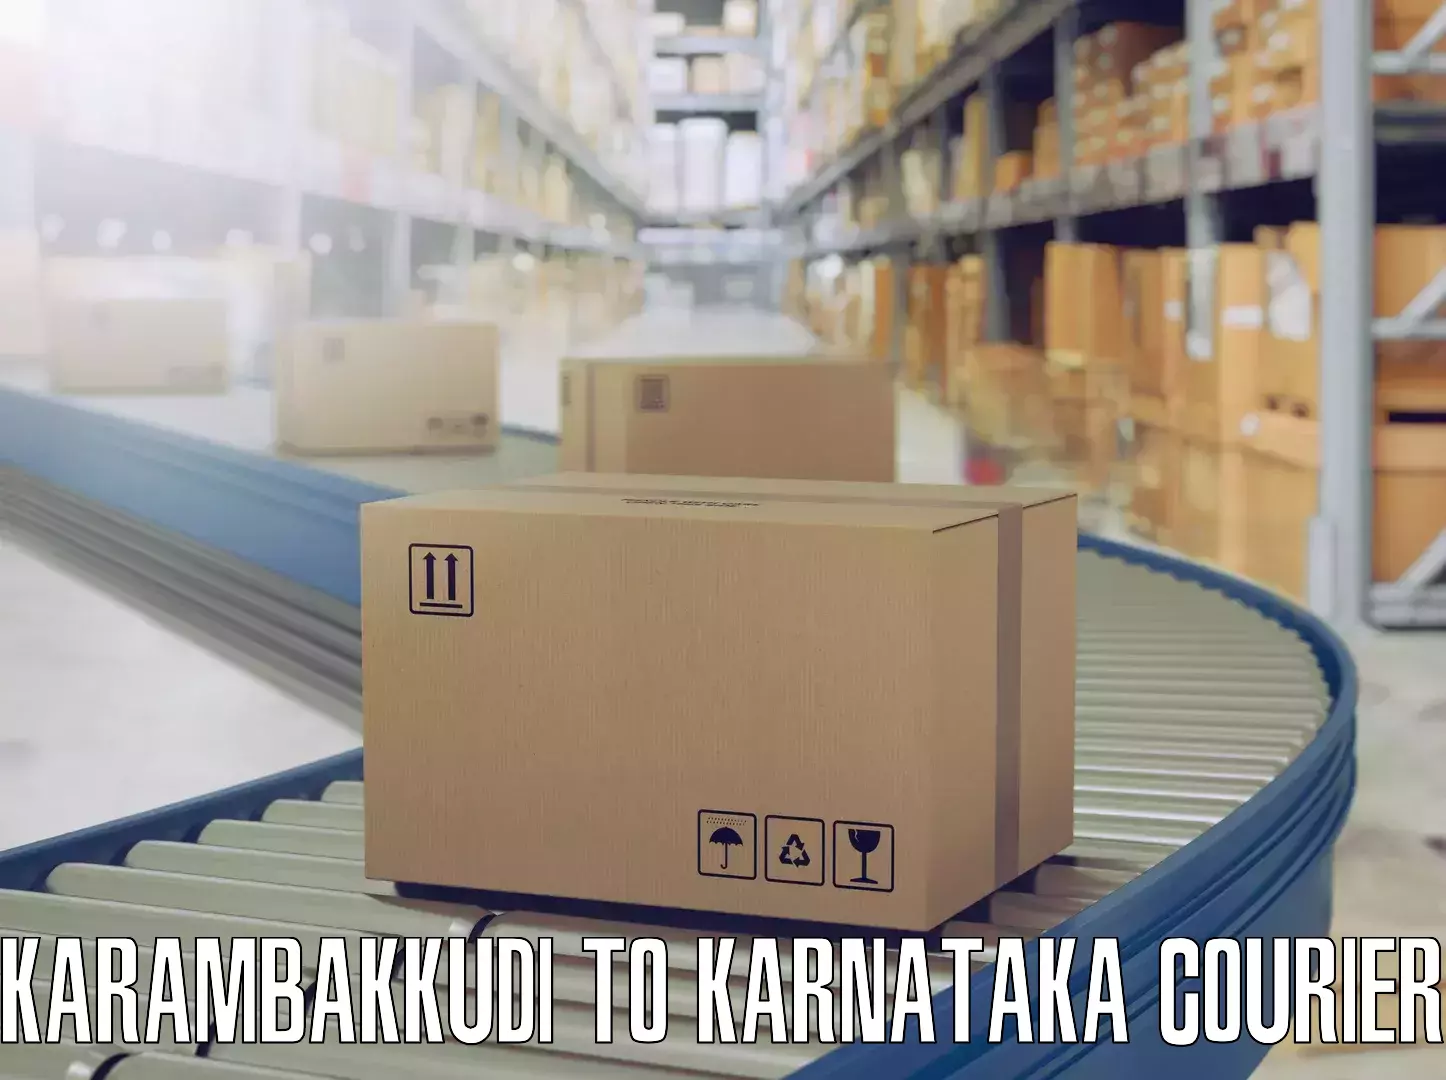 Furniture movers and packers Karambakkudi to Shanivarasanthe